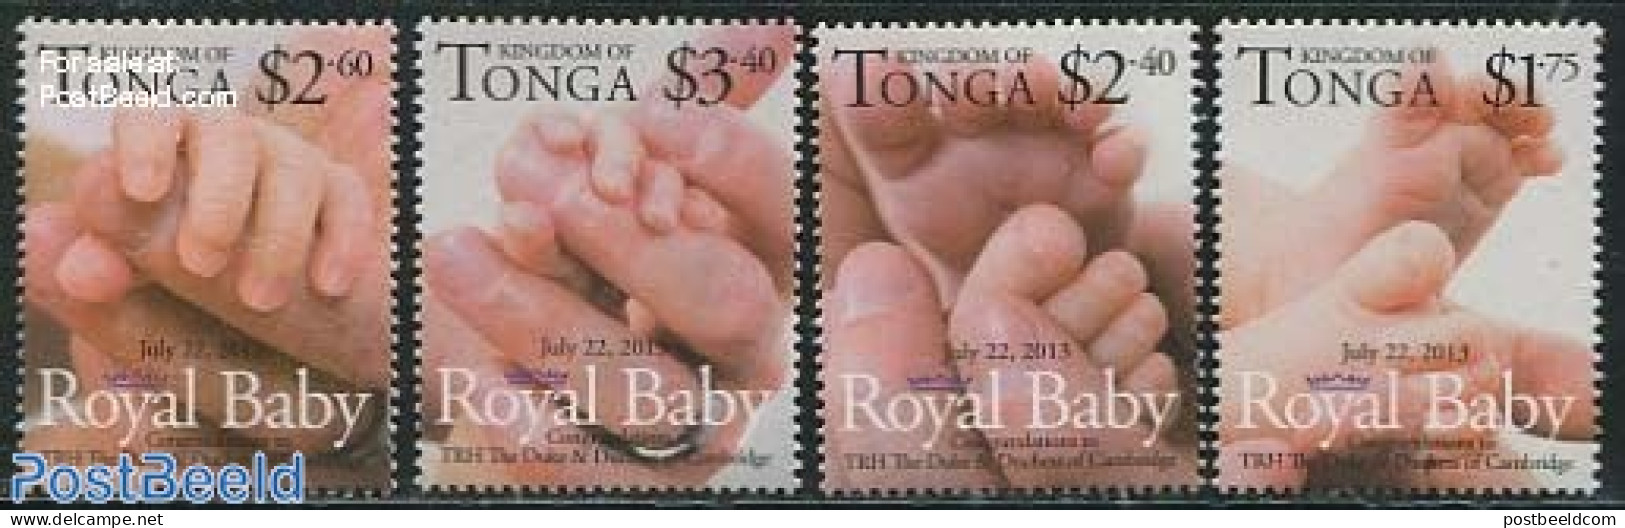 Tonga 2013 Royal Baby 4v, Mint NH, History - Kings & Queens (Royalty) - Royalties, Royals